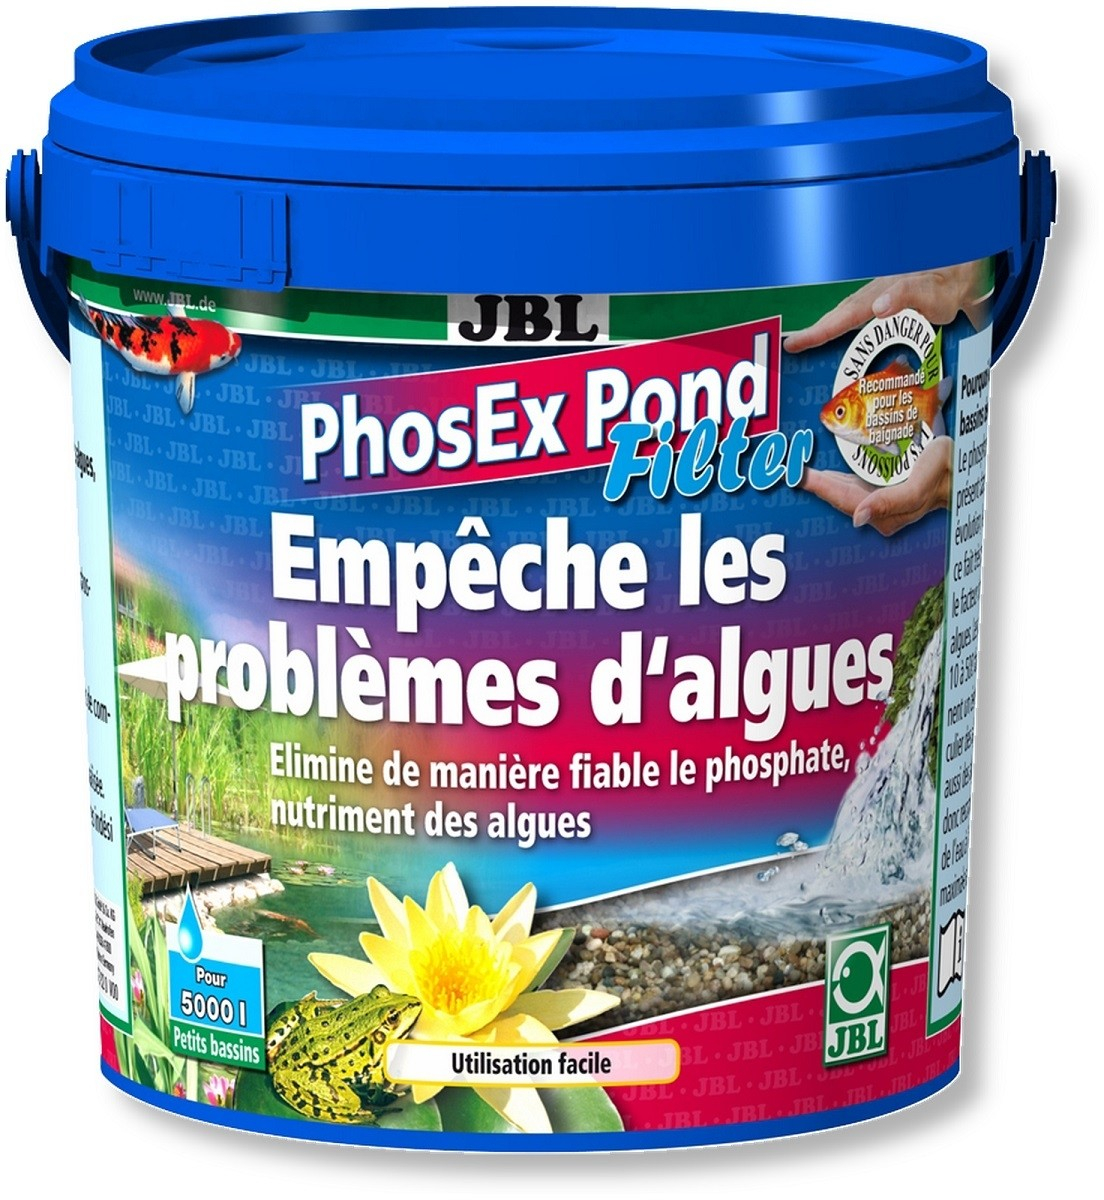 JBL PhosEx Pond Filter Antiphosphate für Teiche